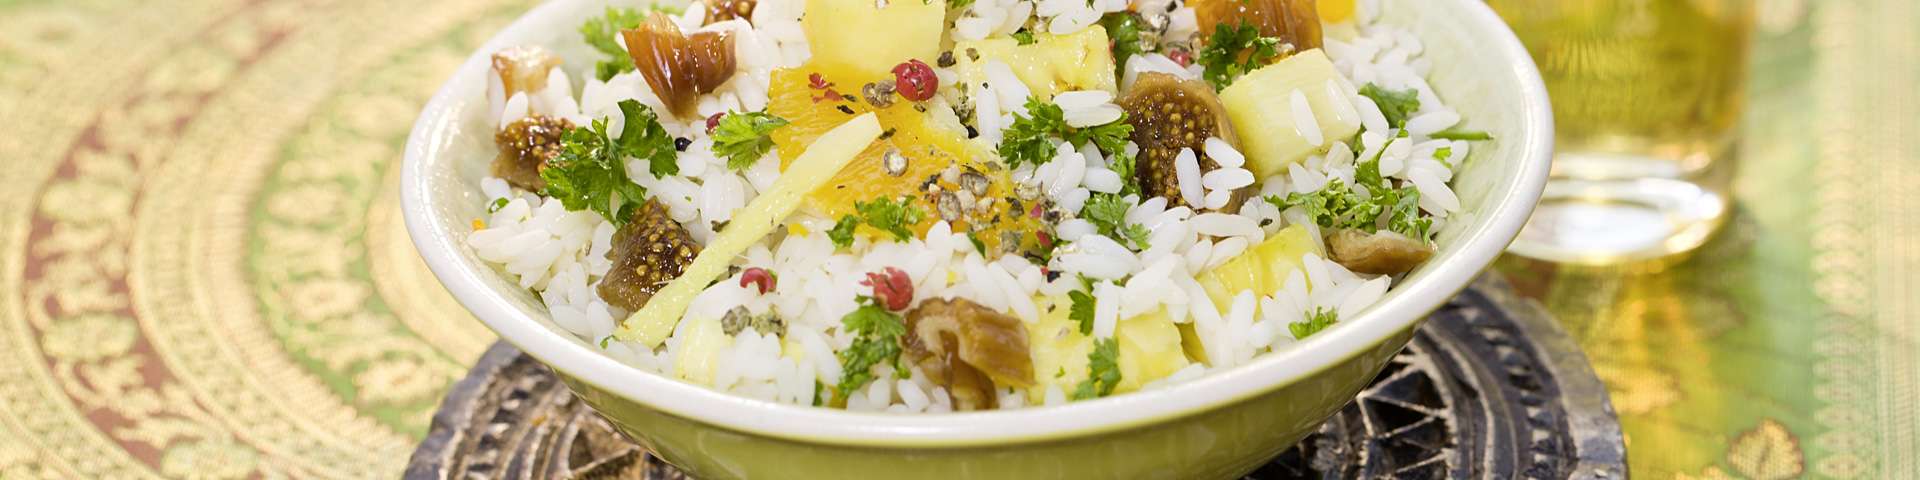 Orientalischer Reissalat Mit Curry Und Datteln — Rezepte Suchen